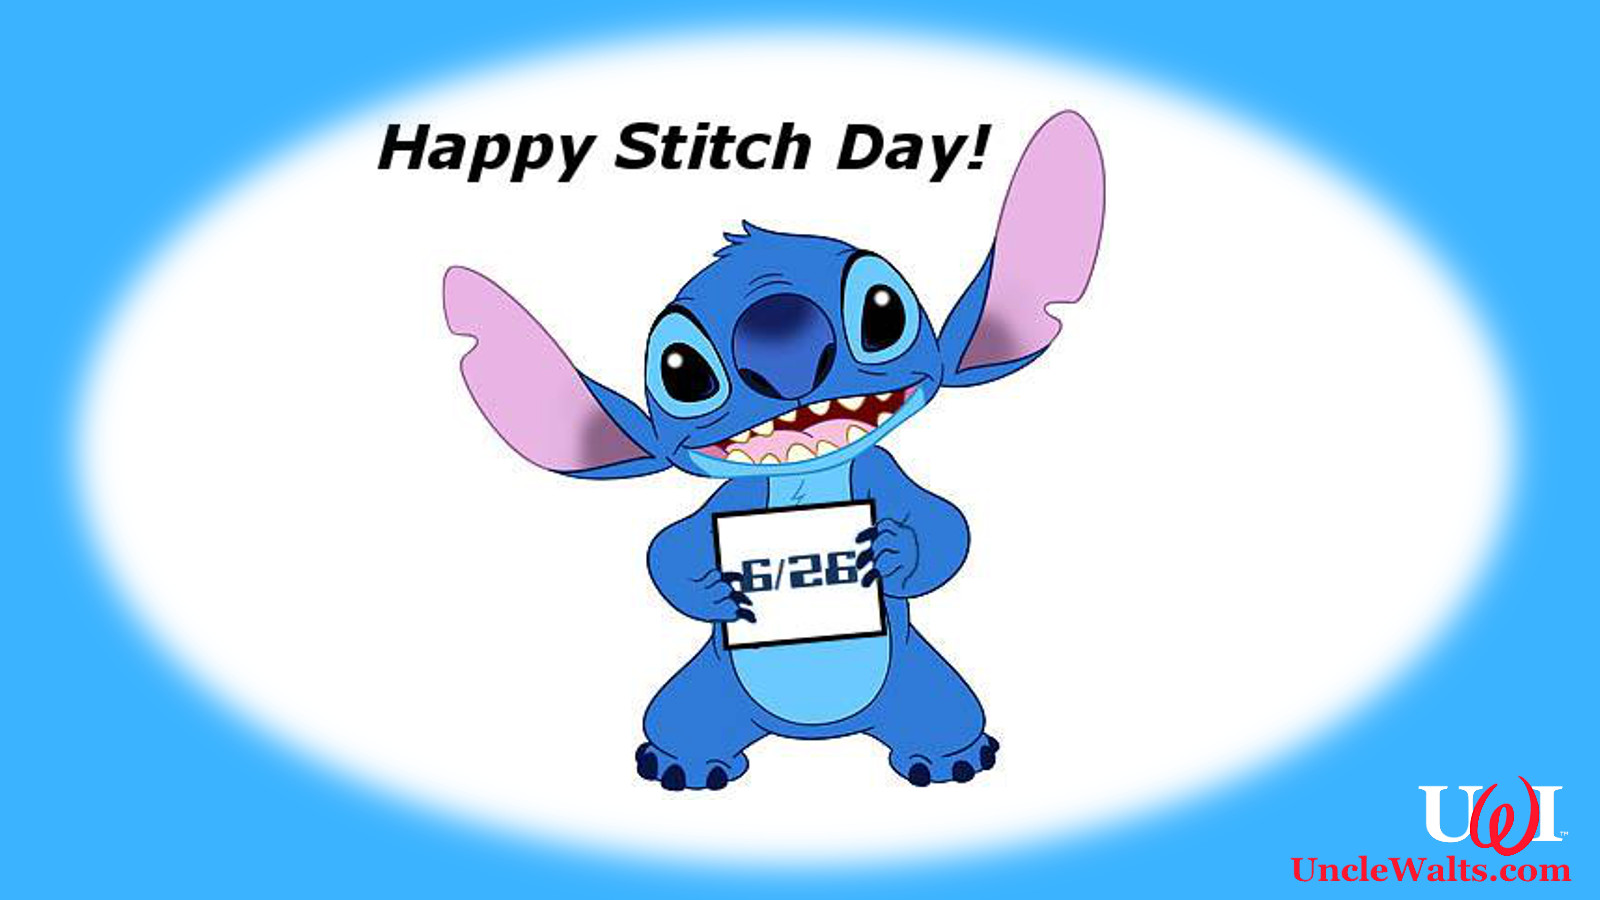 Happy Stitch Day!!! 